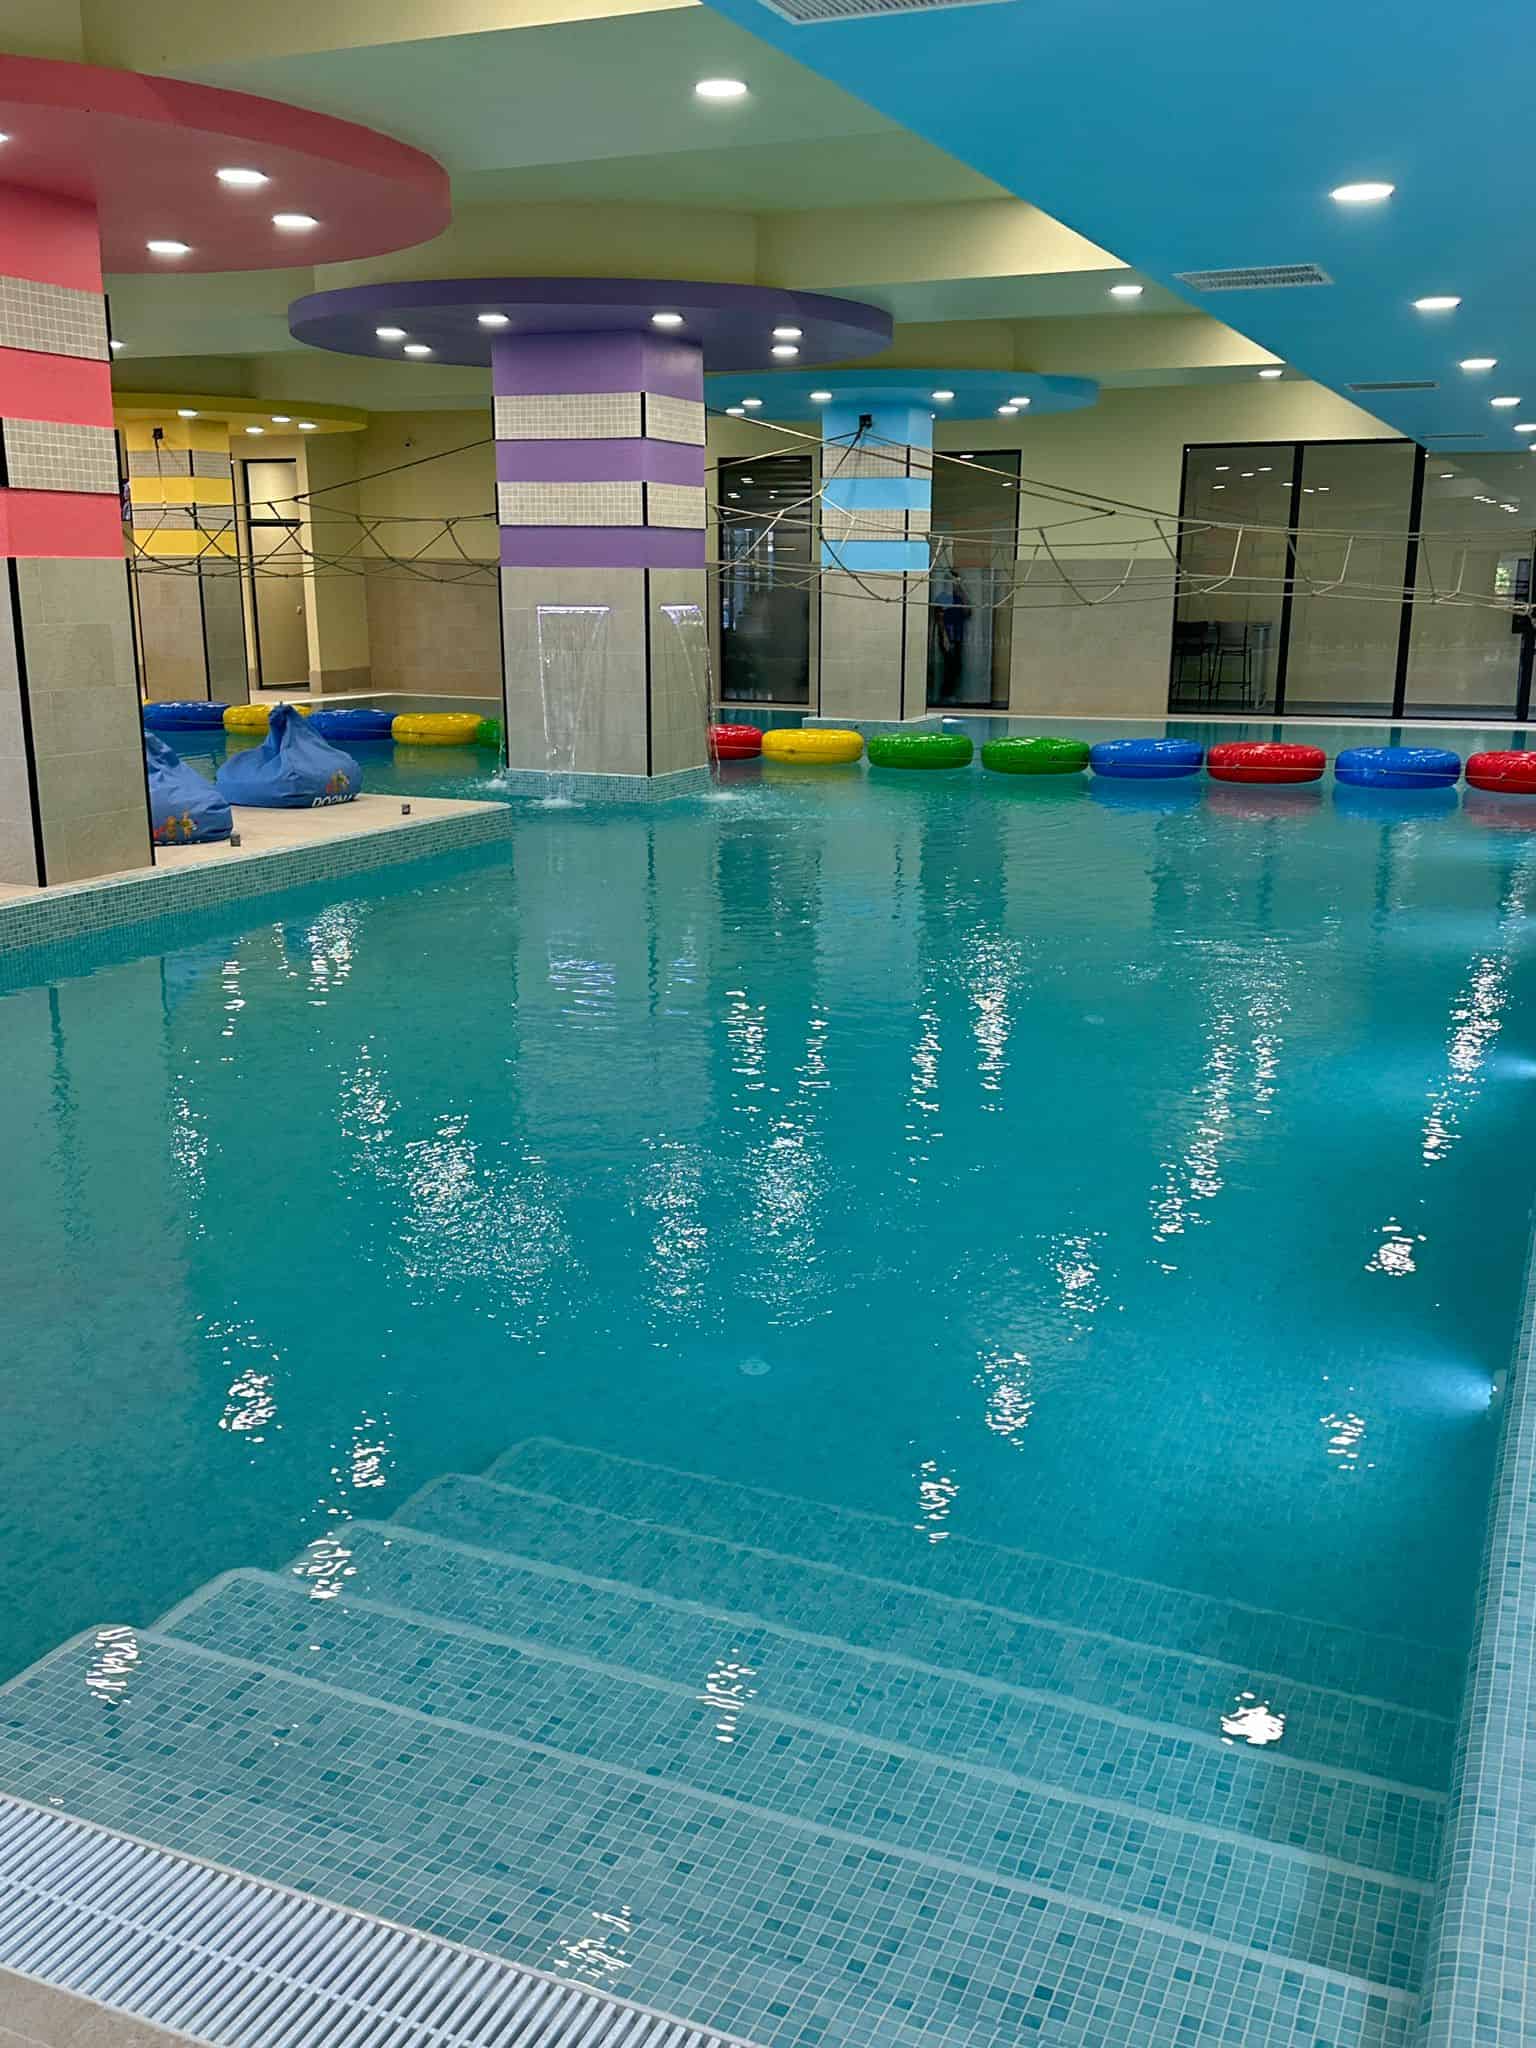 s-a deschis noul aqua park aria sibiu, care include o varietate de piscine, tobogane, zone de relaxare și facilități pentru toate vârstele (foto)